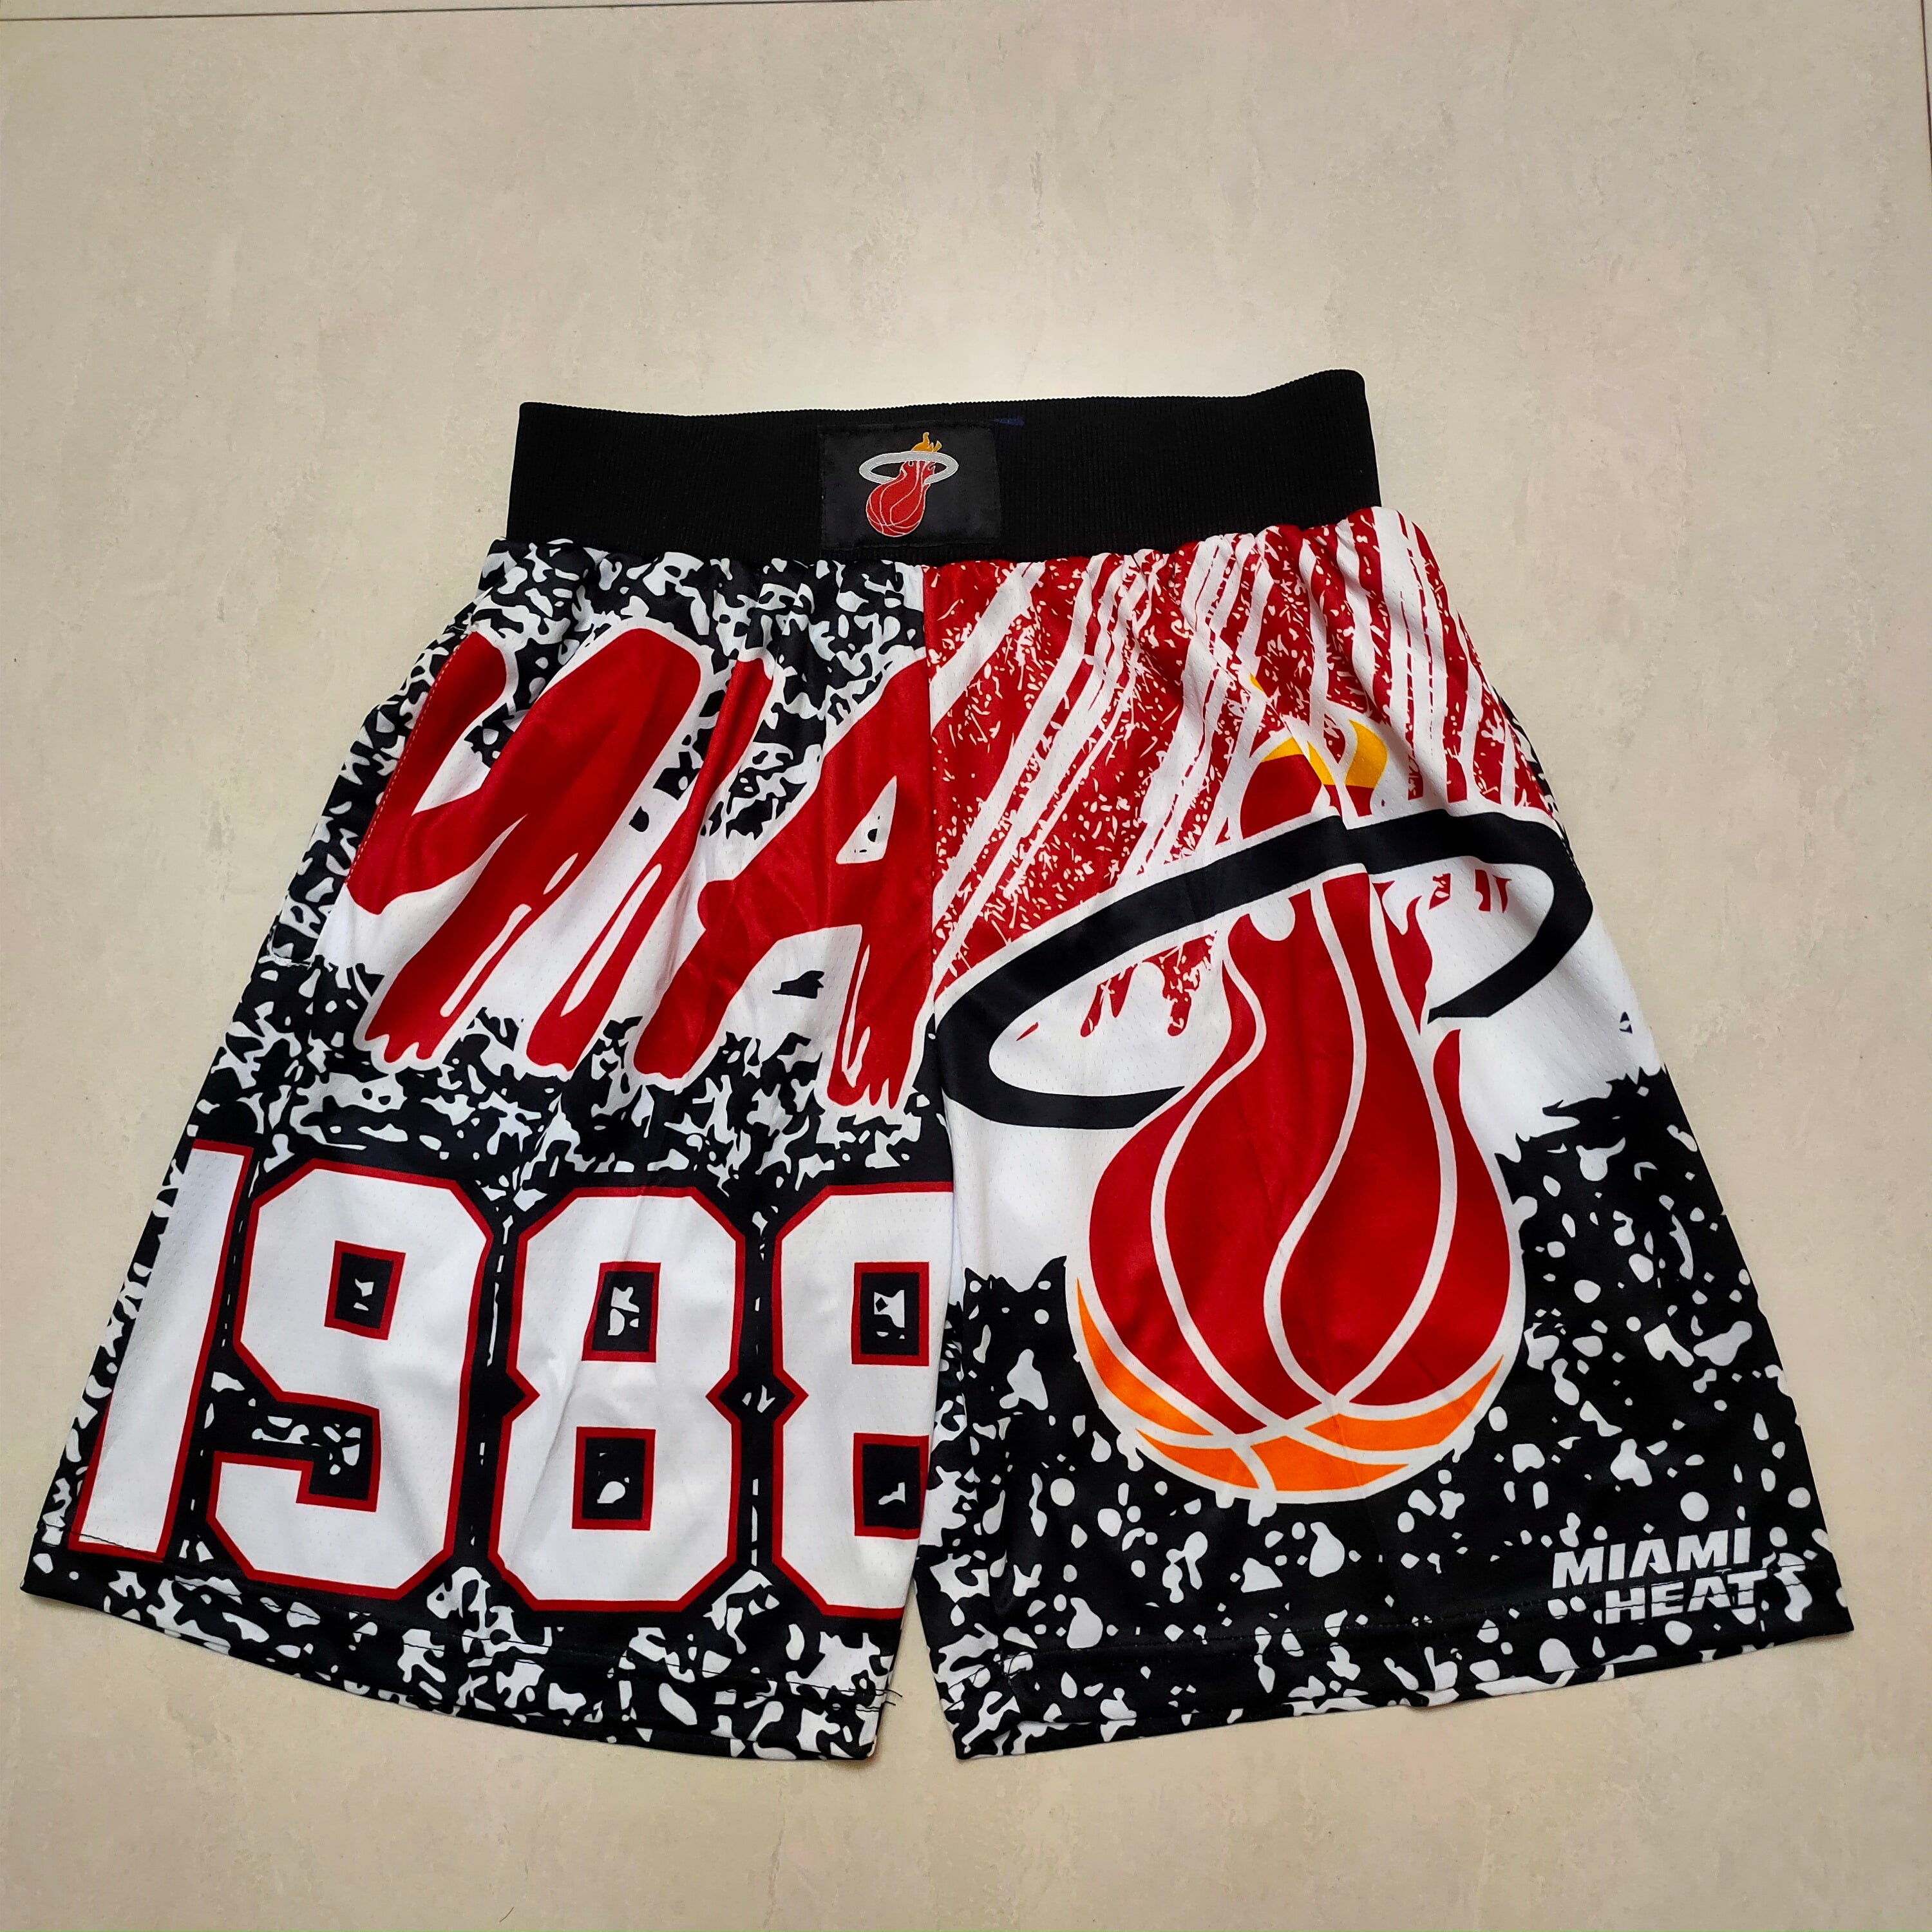 Miami 1988 shorts